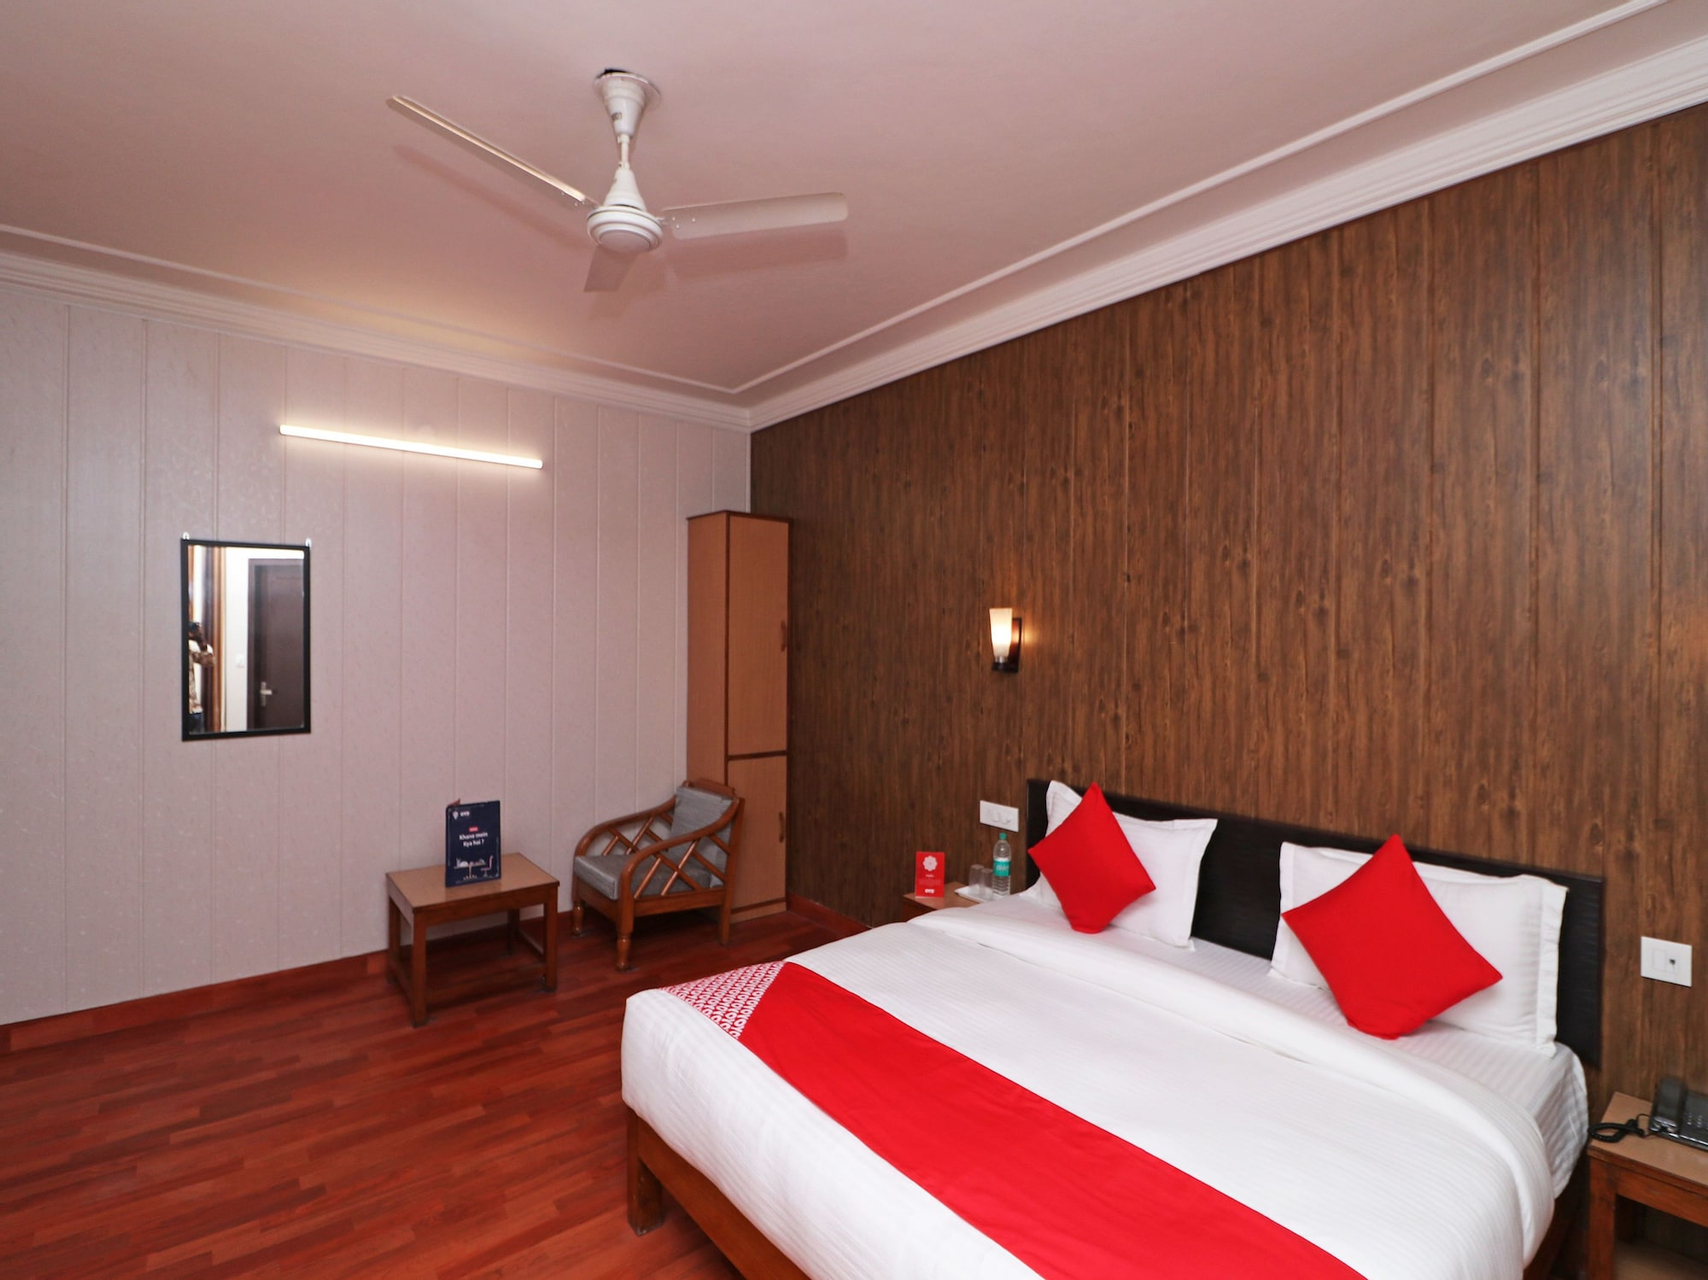 Bedroom 1, OYO 12939 Hotel Mehtab Regency, Rewari